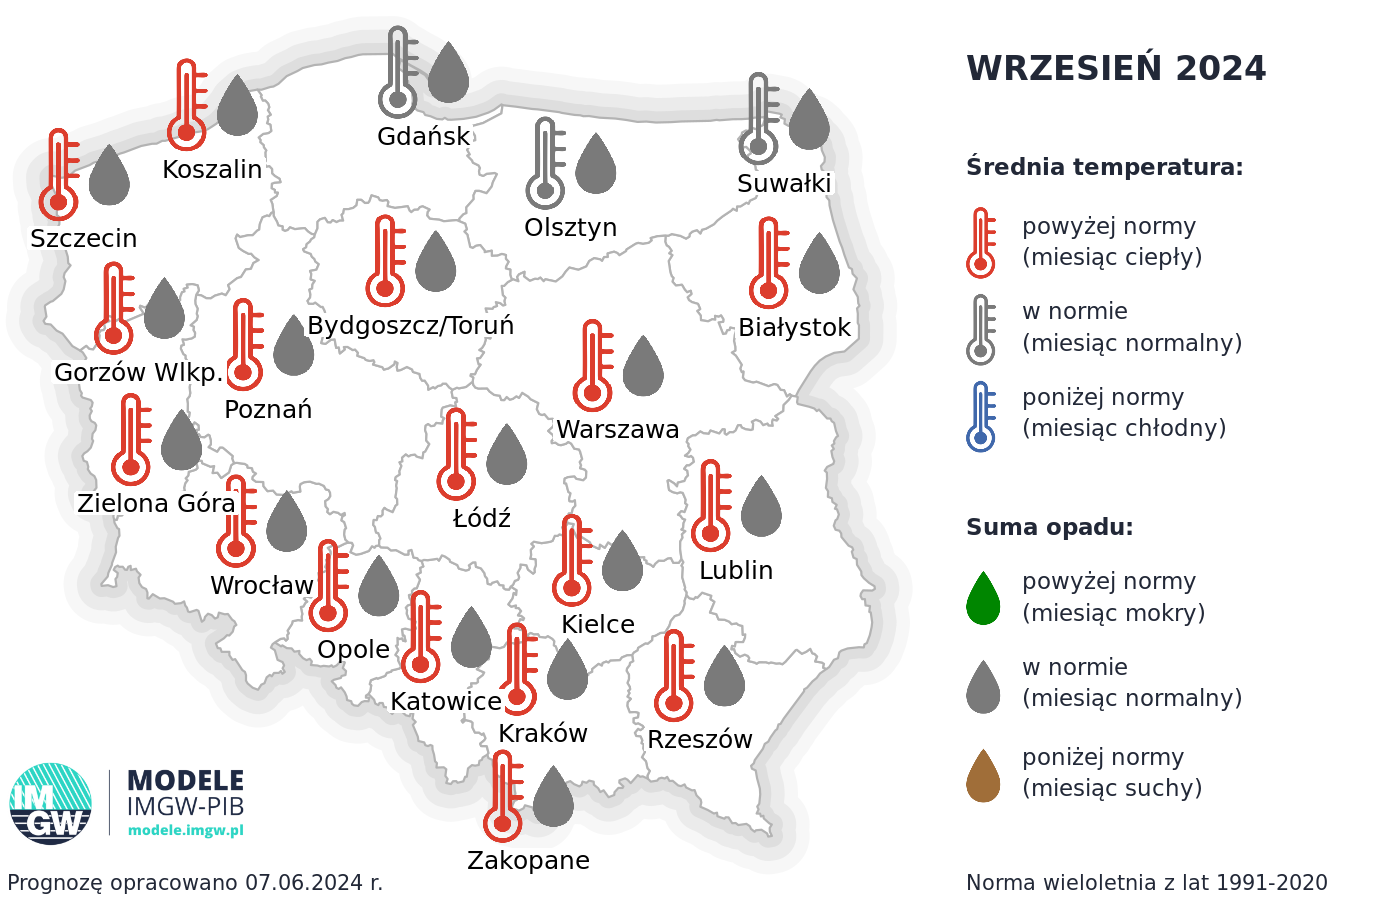 Rys. 3. Prognoza średniej miesięcznej temperatury powietrza i miesięcznej sumy opadów atmosferycznych na wrzesień 2024 r. dla wybranych miast w Polsce